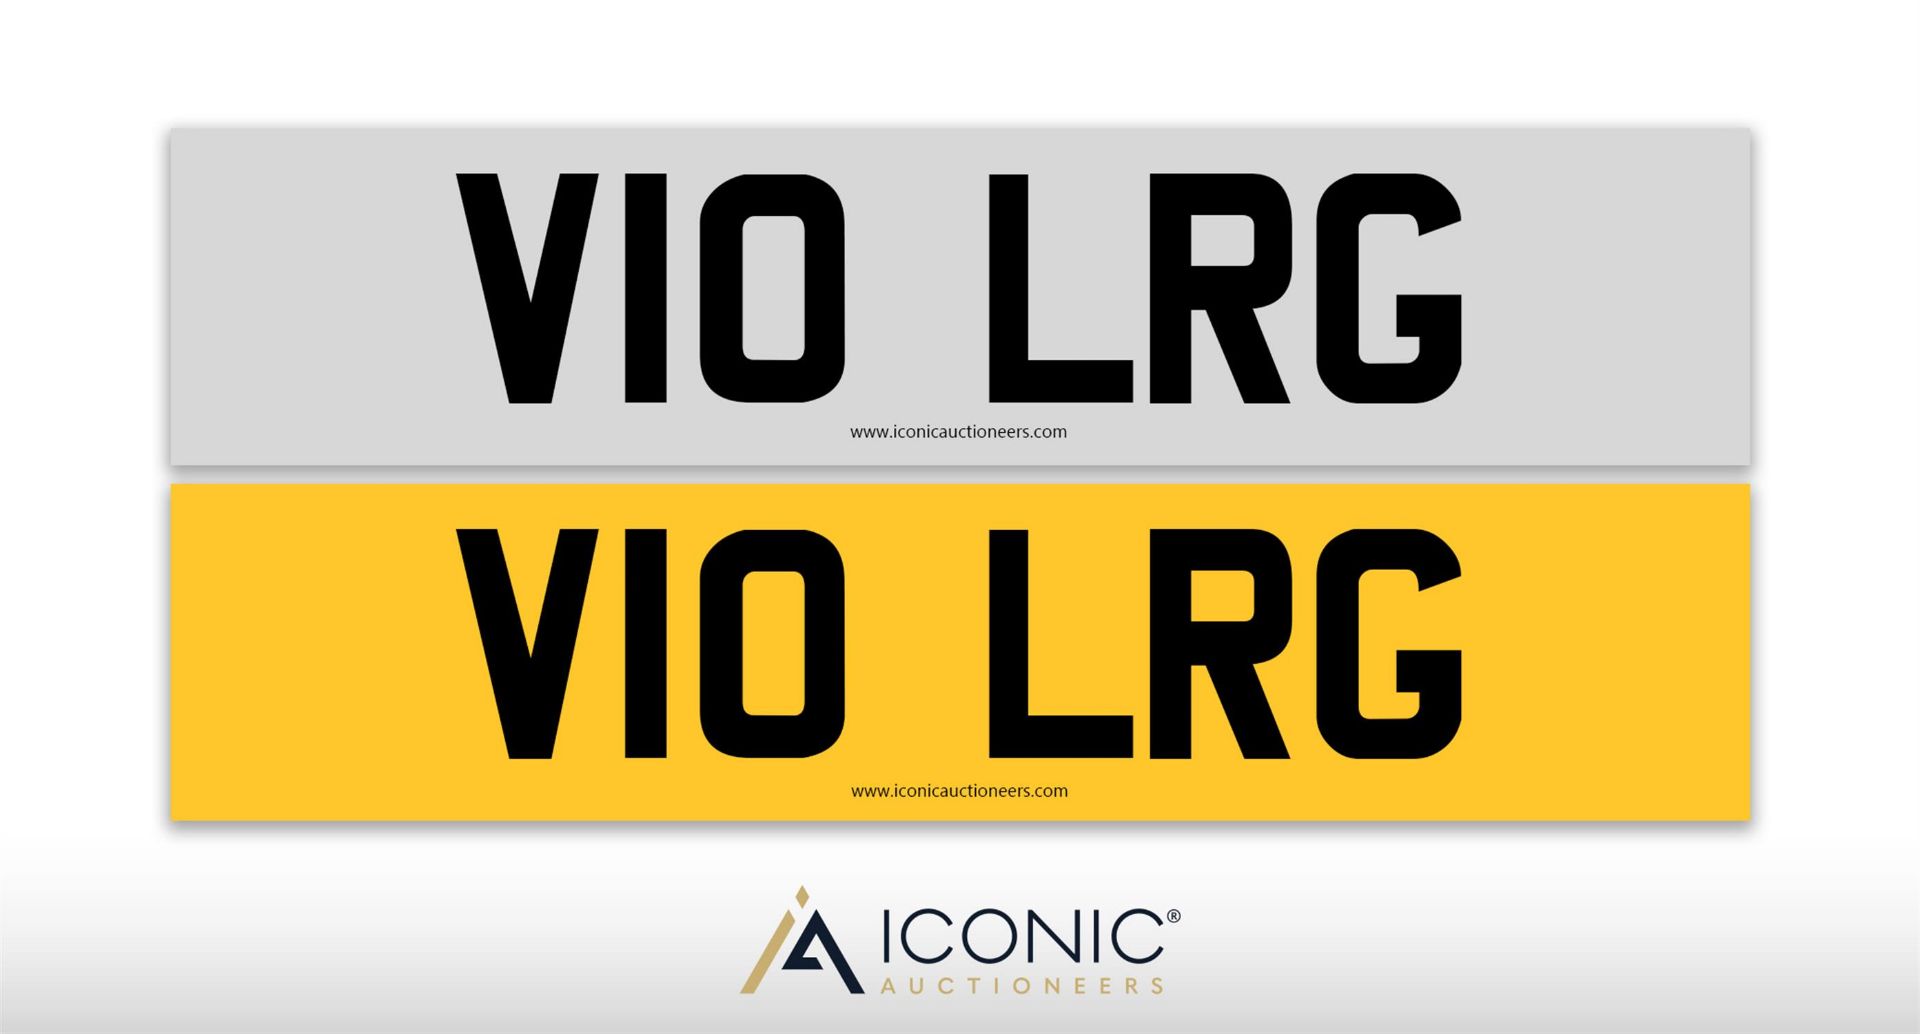 Registration Number V10 LRG